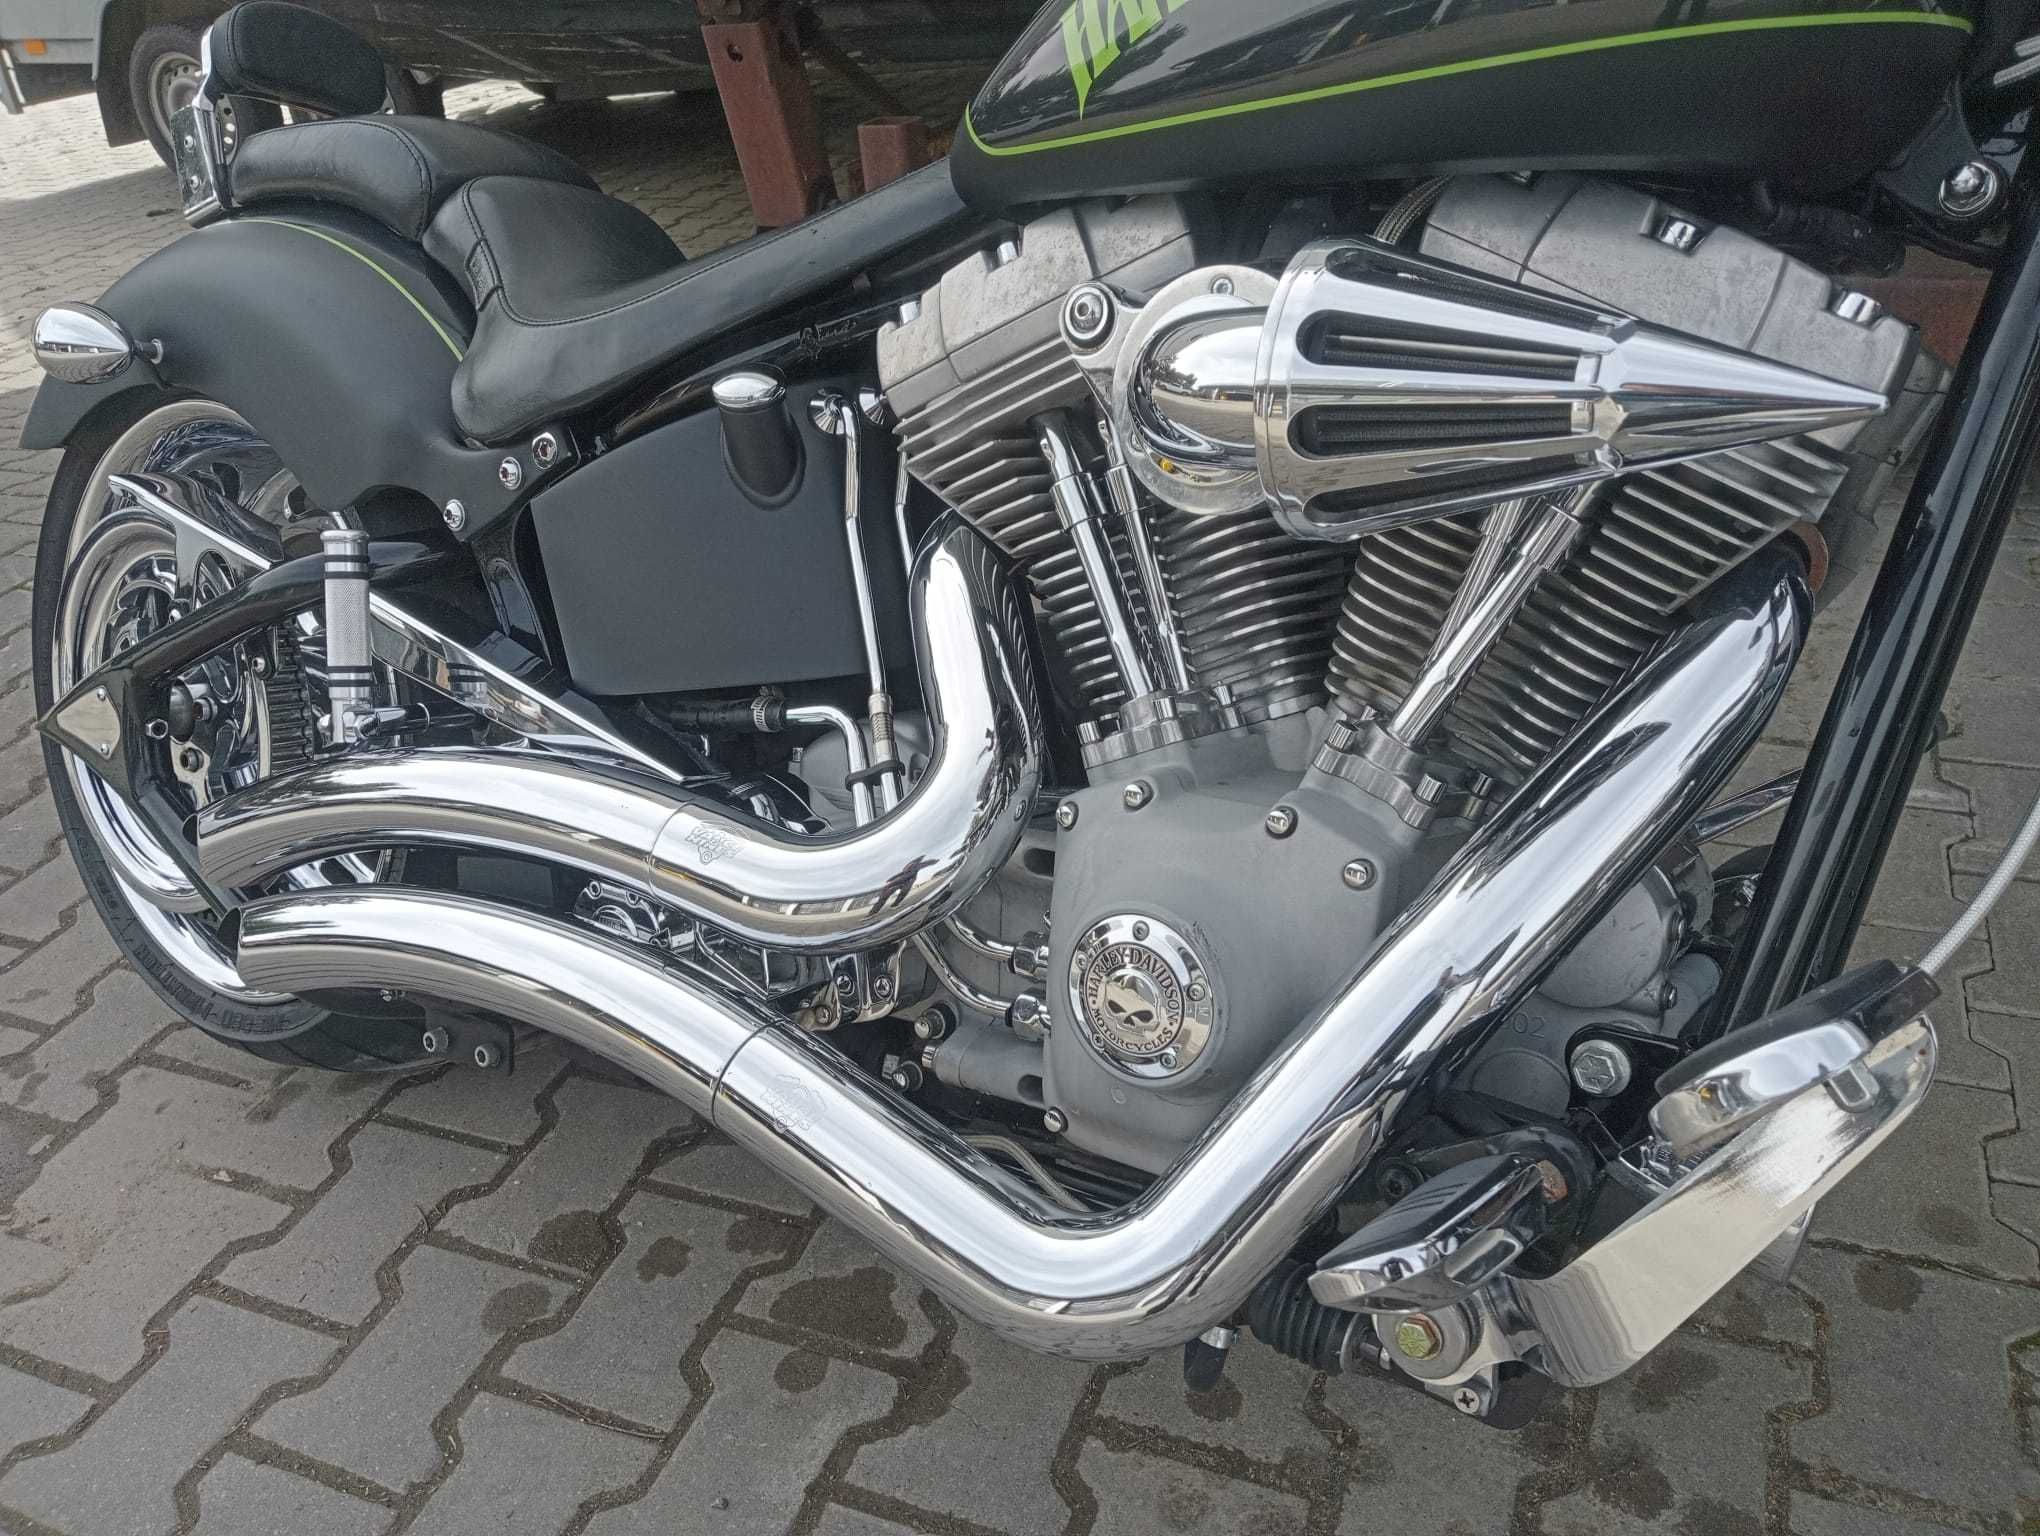 2002 Harley Davidson Model FXSTI